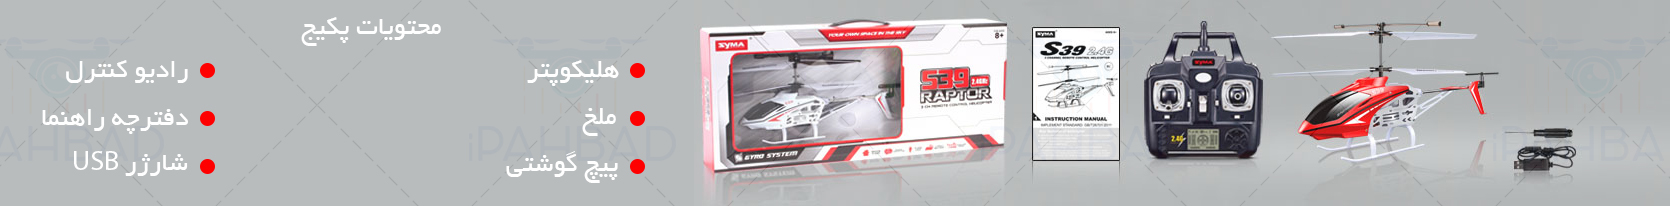 قیمت خرید هلیکوپتر کنترلی سایما Syma S39 یک هلی کوپتر کنترلی سایز بزرگ و محبوب از کمپانی syma برای پرواز در محیط های خارجی و داخلی